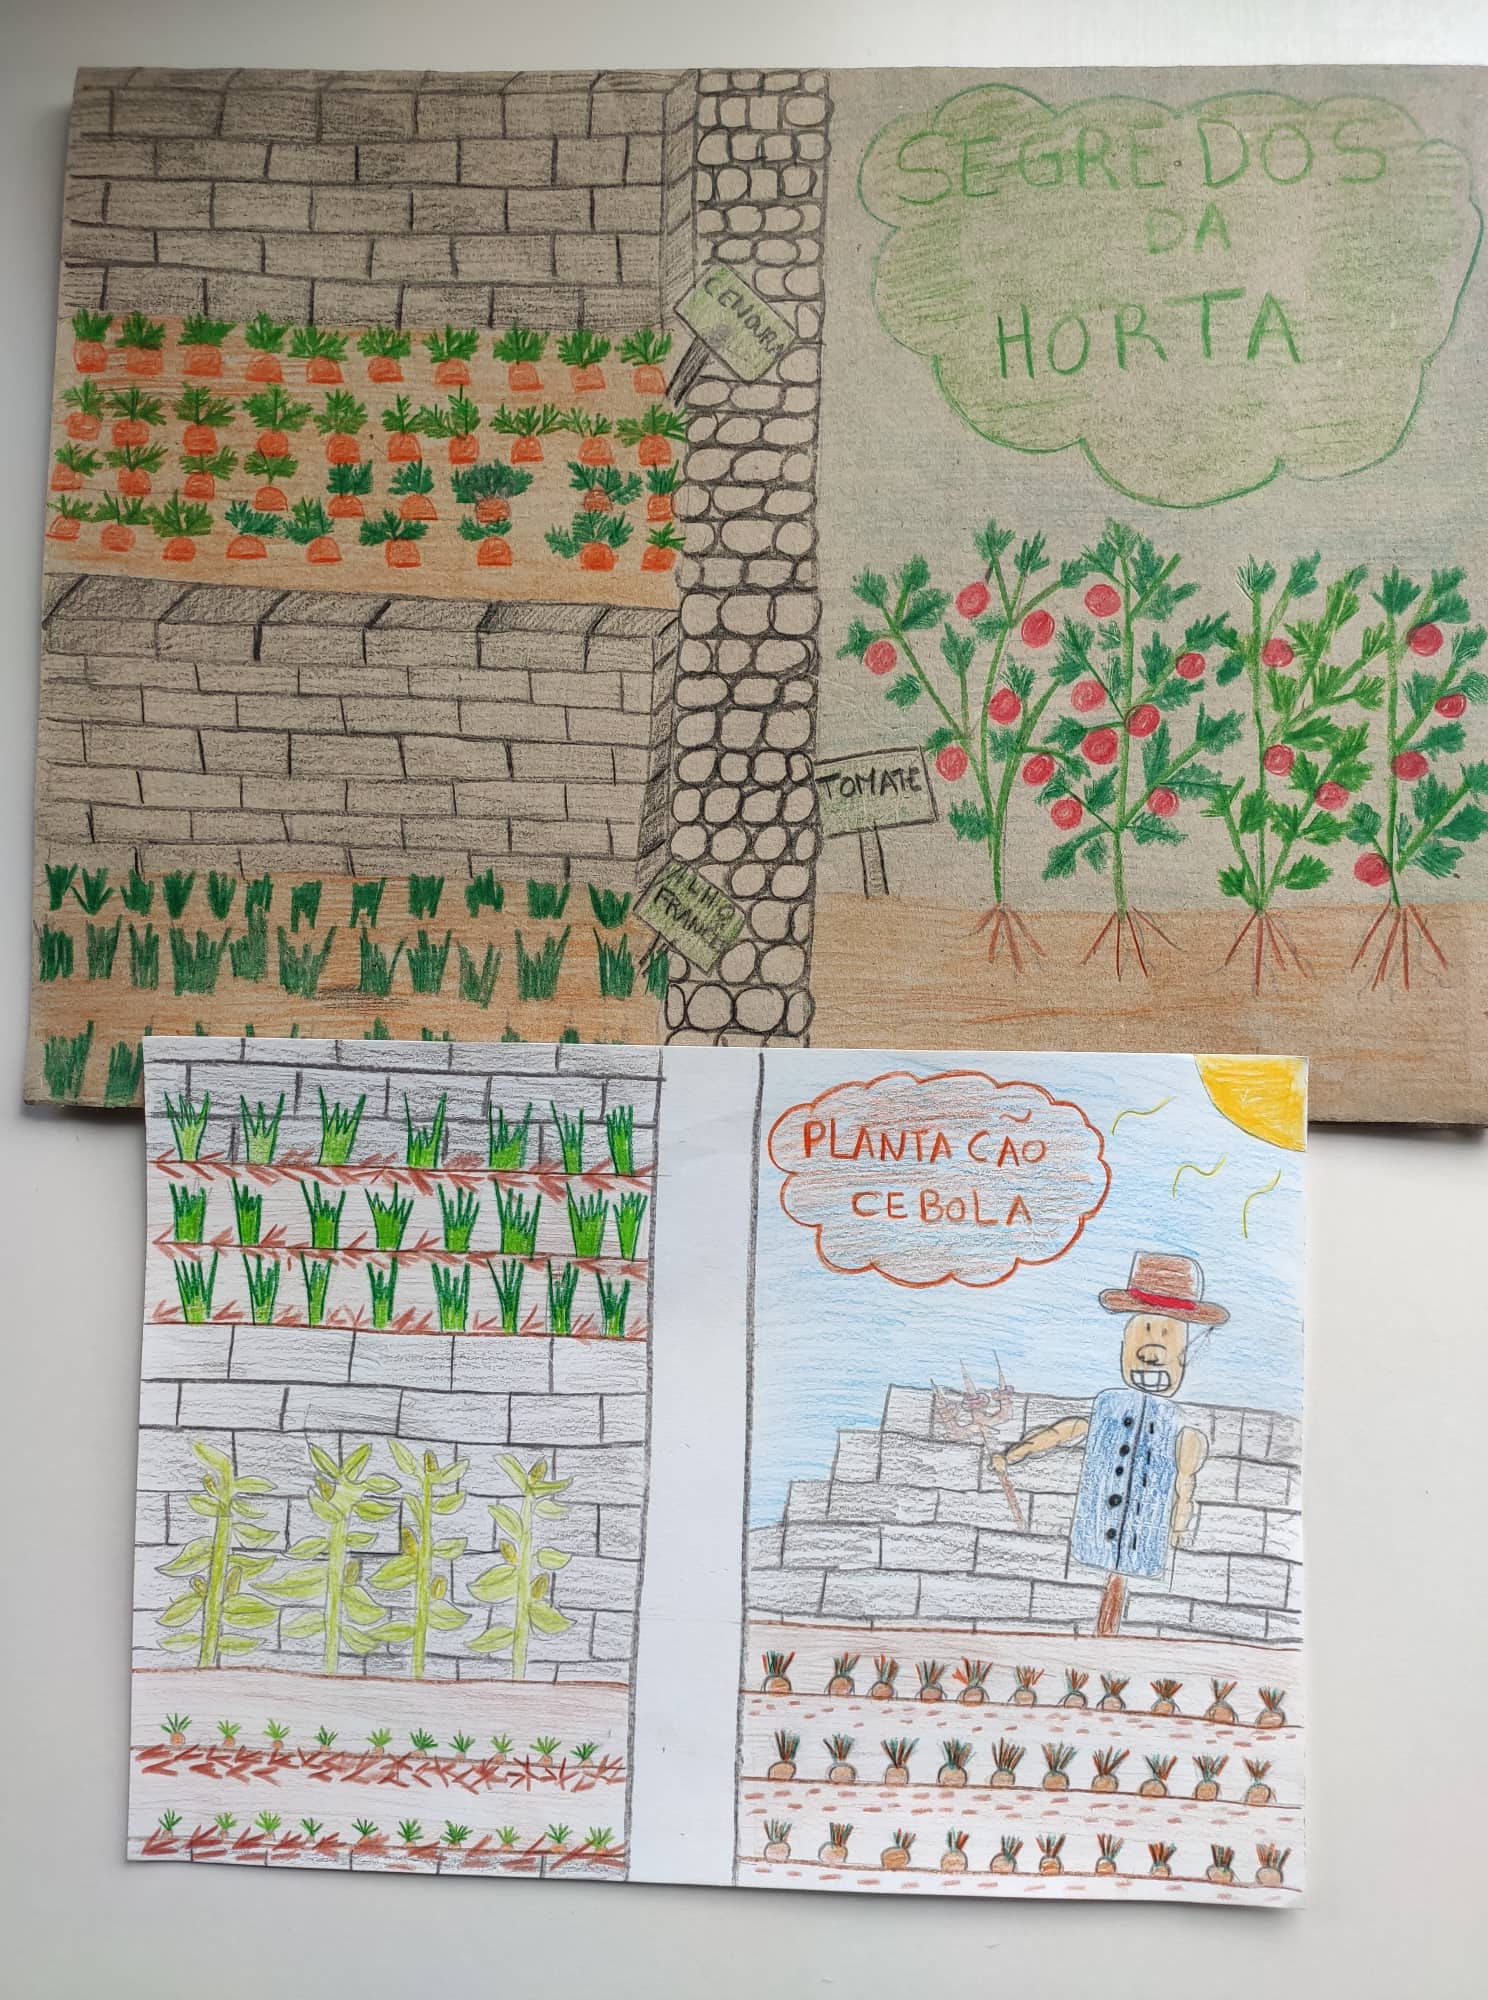 Segredos da Horta - Plantação de cebola - Dicas e truques - ilustração